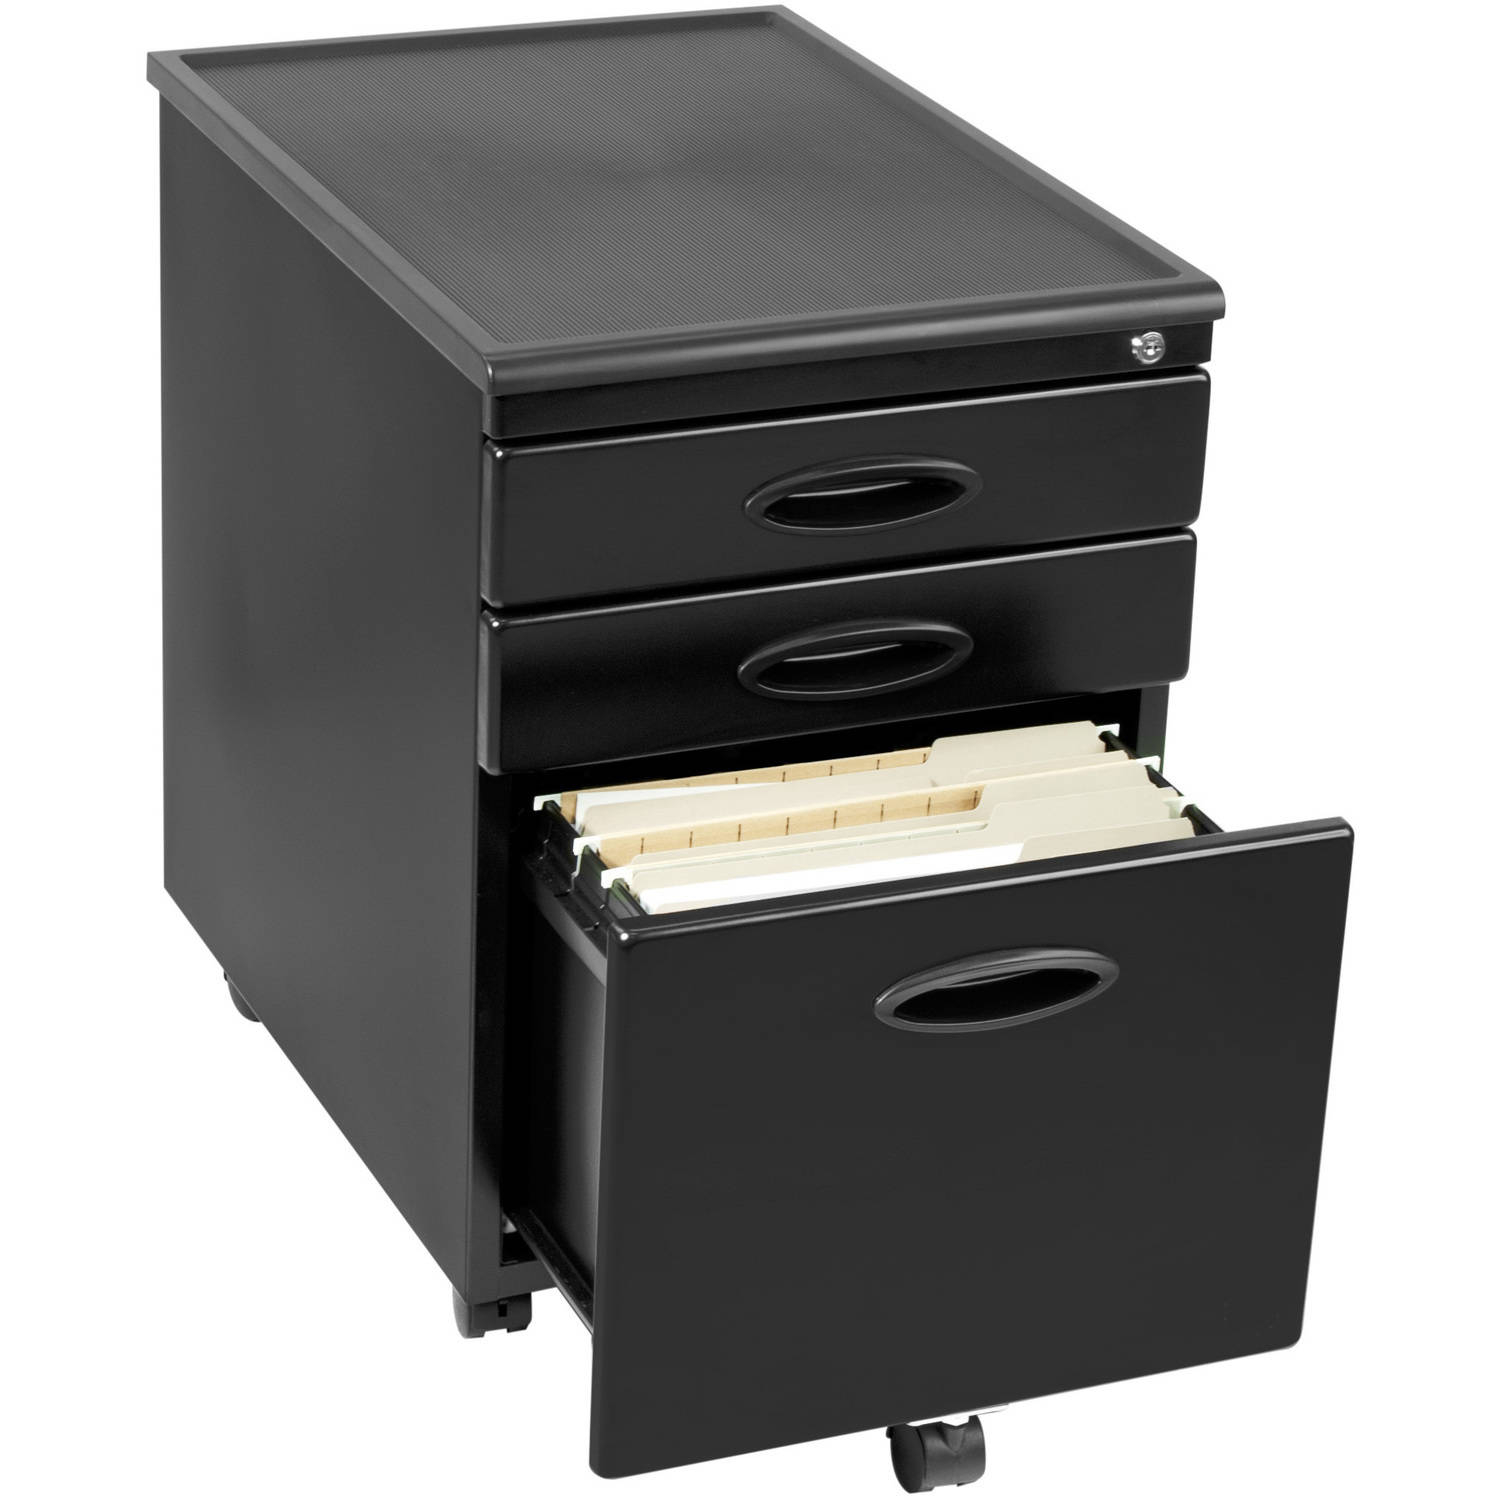 3 Drawer Locking File Cabinet 3 Drawer Locking File Cabinet Pink 2 regarding size 1500 X 1500